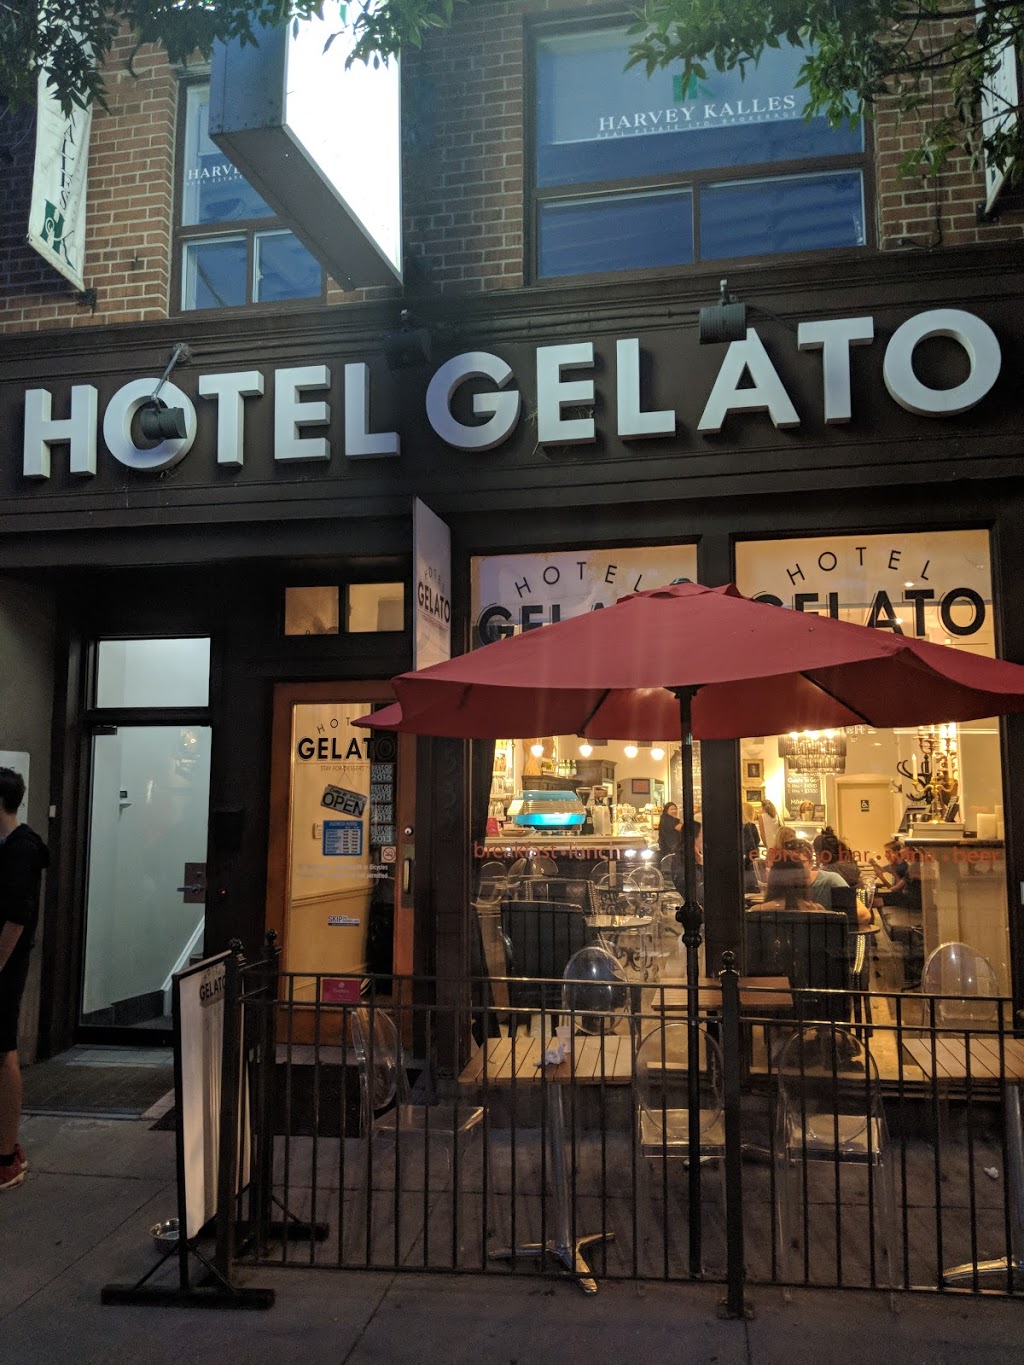 Hotel Gelato | cafe | 532 Eglinton Ave W, Toronto, ON M5N 1B4, Canada | 4169322663 OR +1 416-932-2663